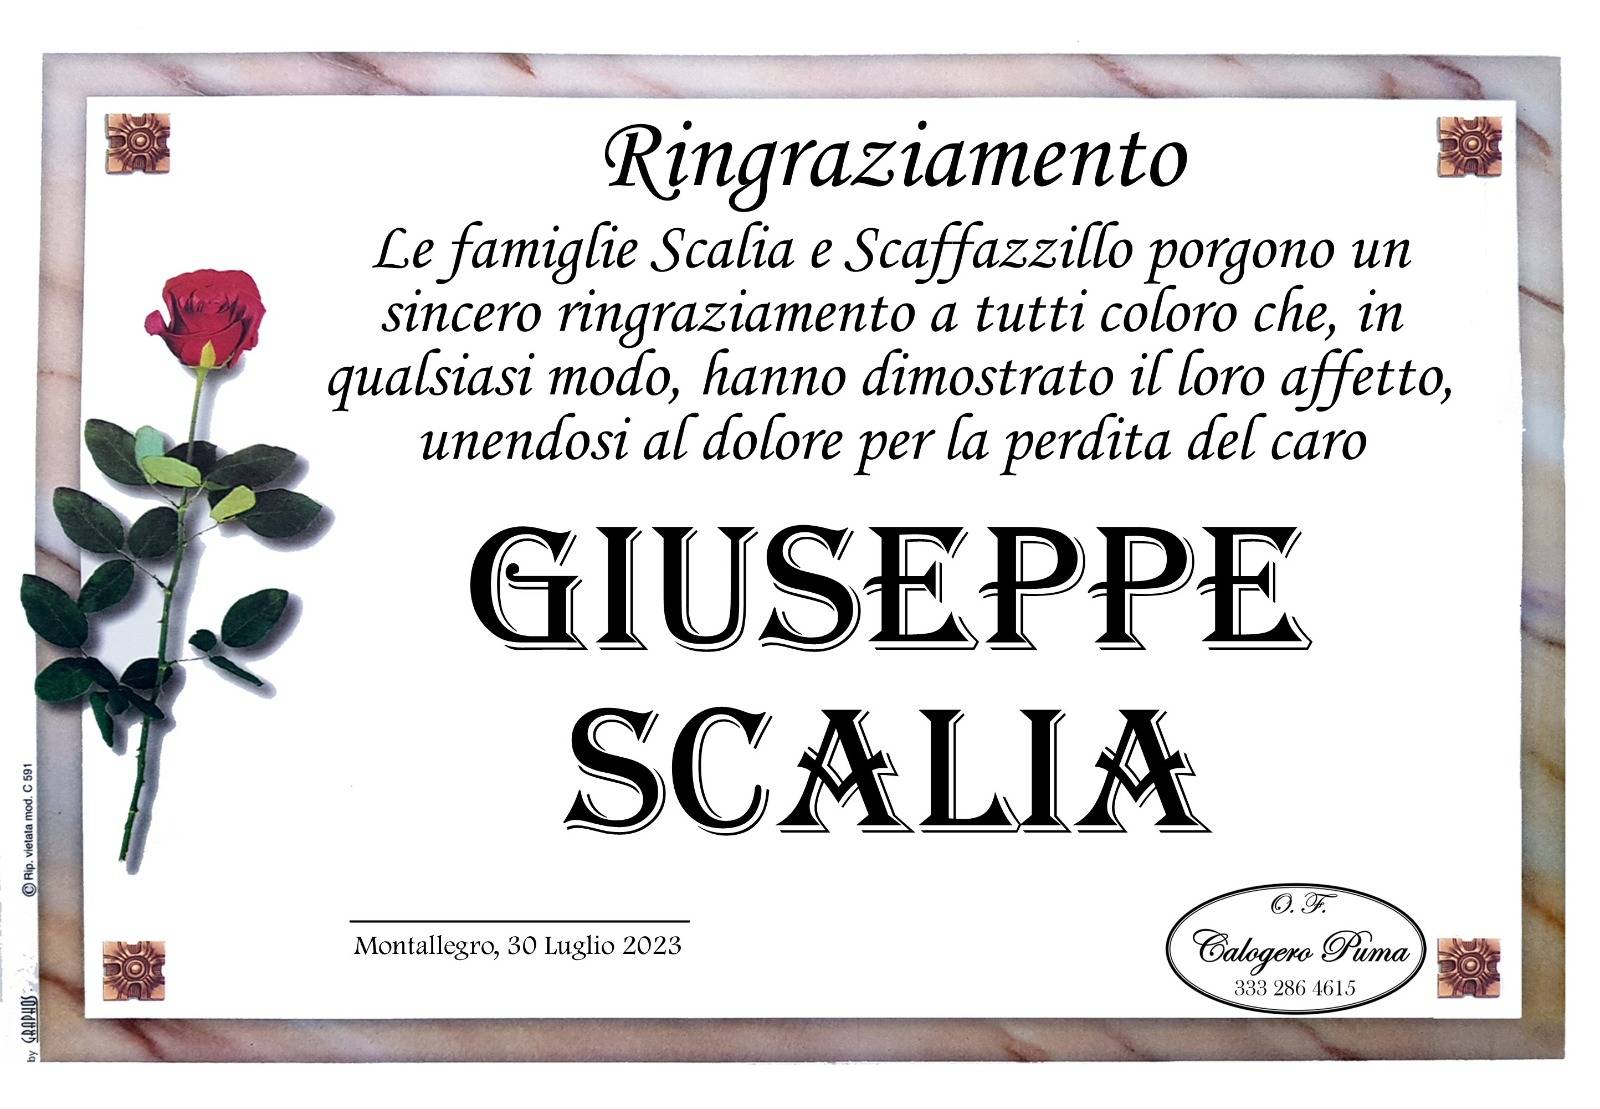 Giuseppe Scalia